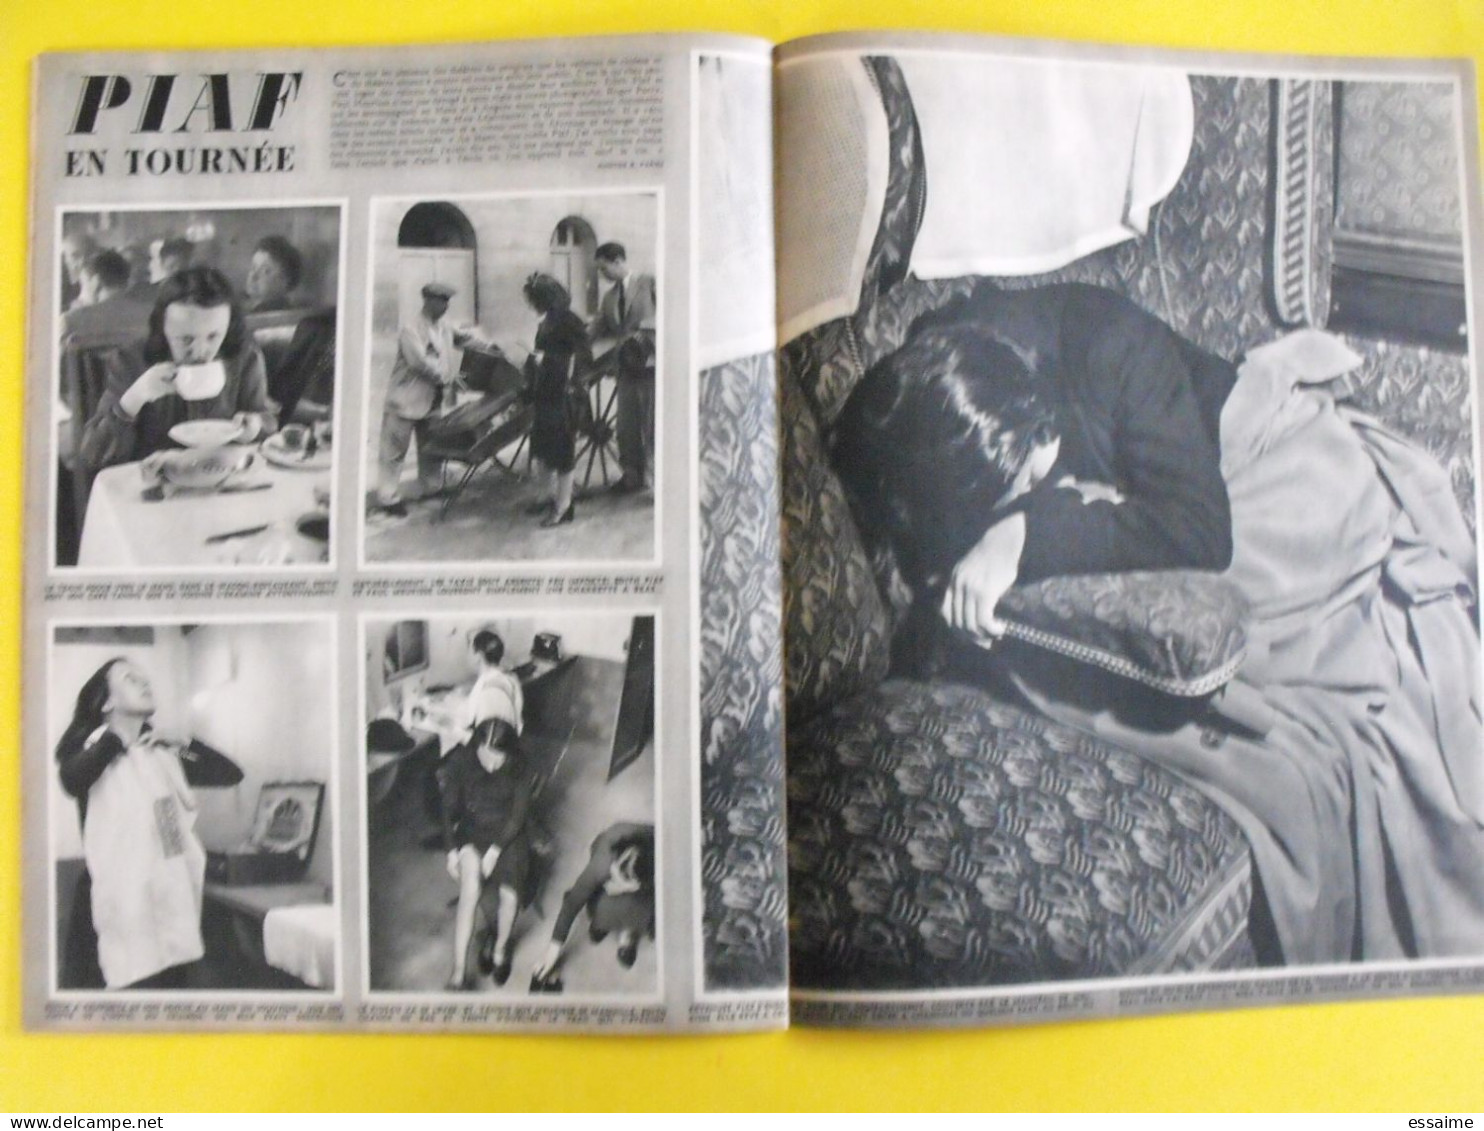 6 revues La semaine de 1941. actualités guerre. photos collaboration maurice chevalier viviane romance roosevelt